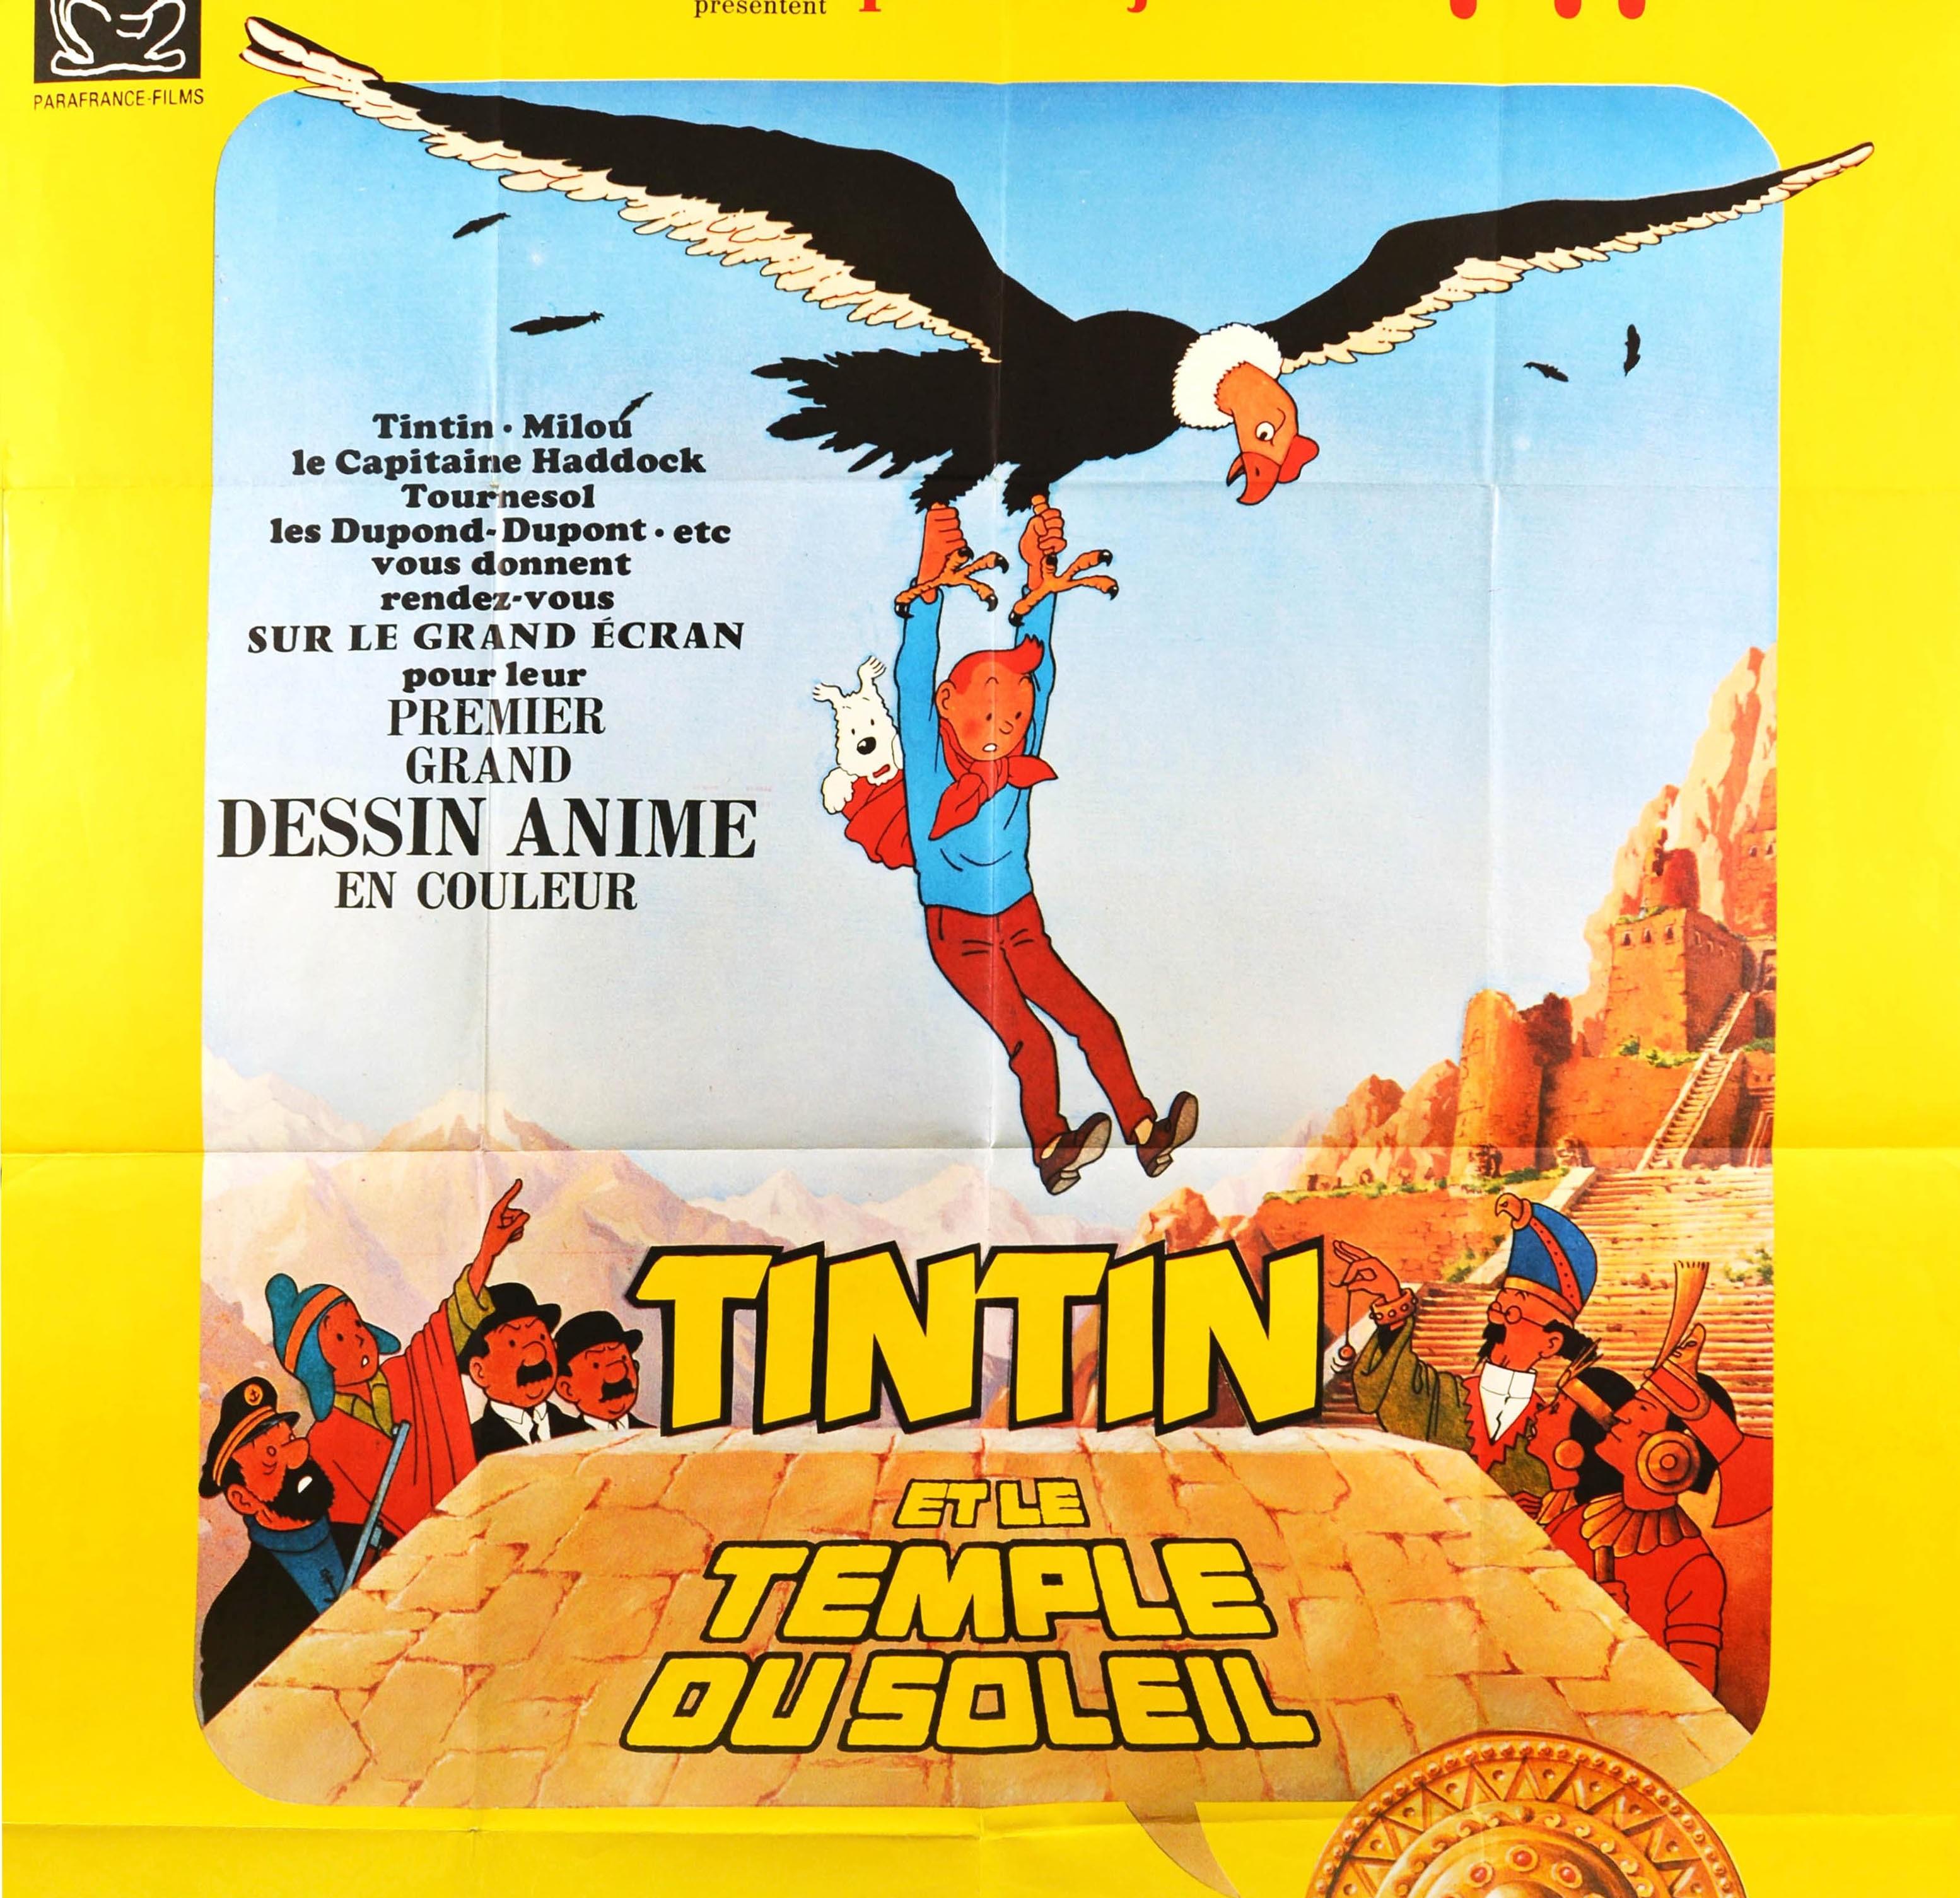 tintin movie 2